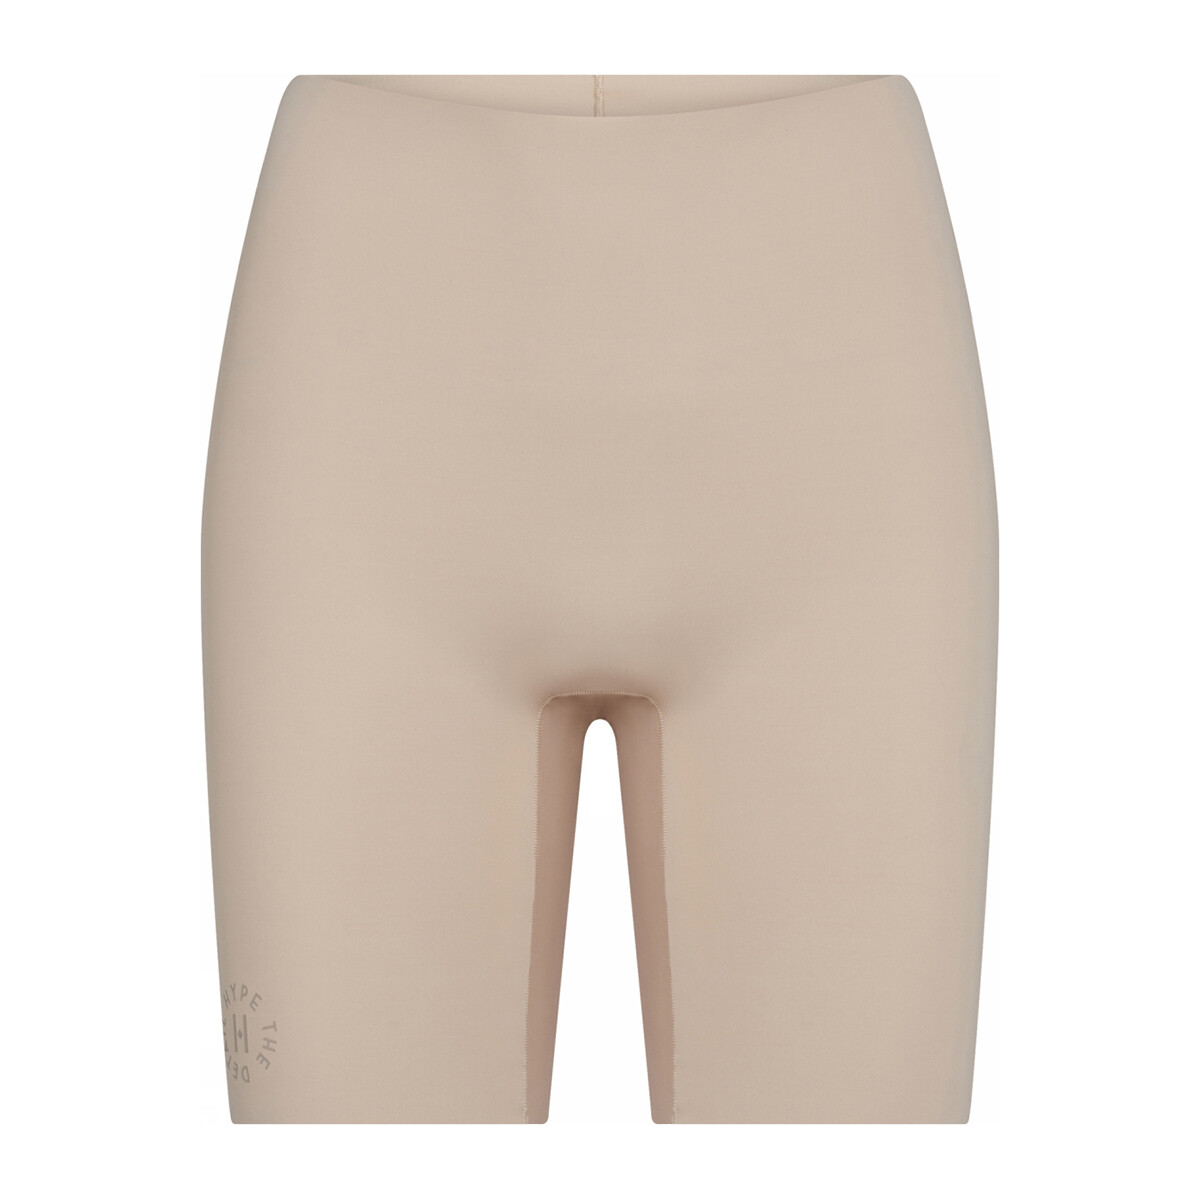 Se Hype The Detail Essentials Shorts, Farve: Beige, Størrelse: M, Dame hos Netlingeri.dk